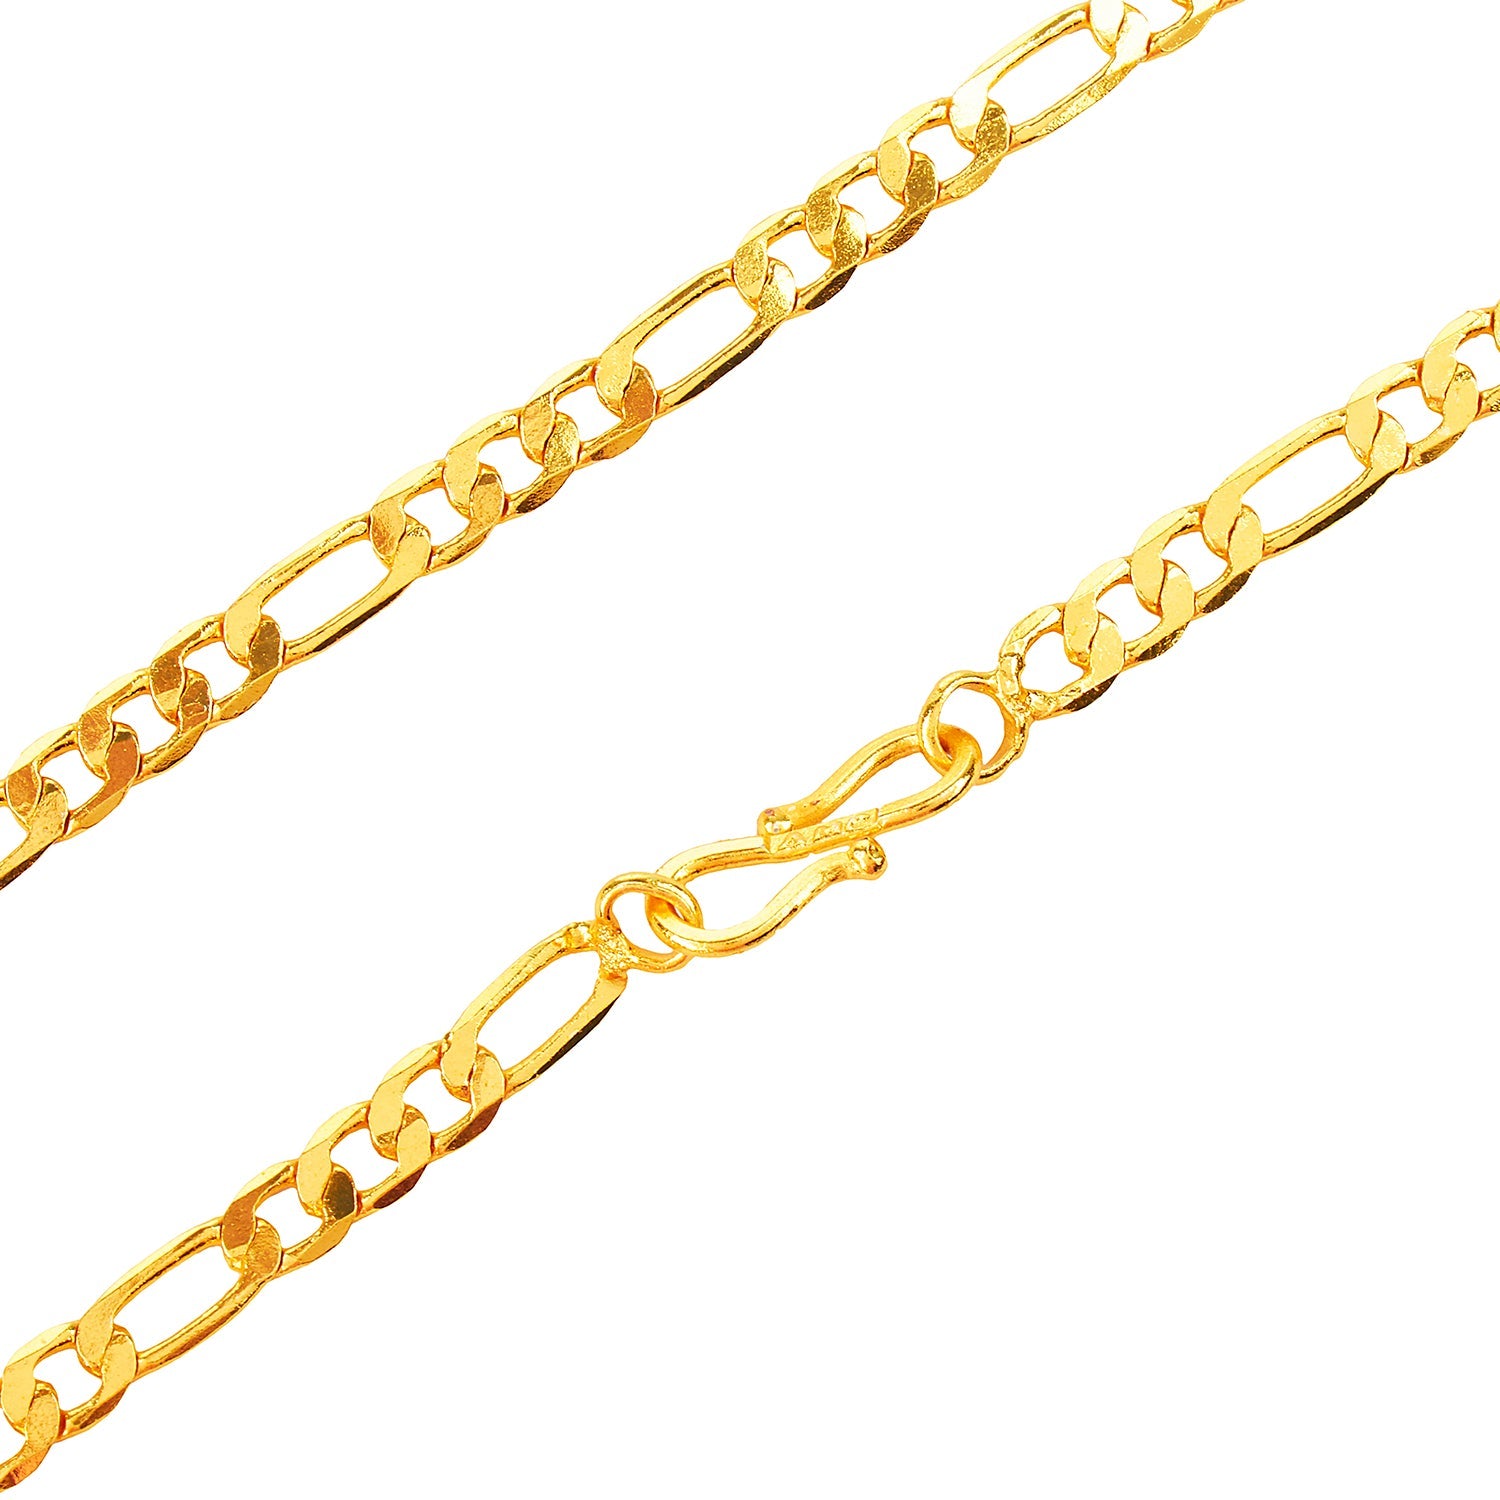 Gold bracelet in 4 gram sachin design - YouTube